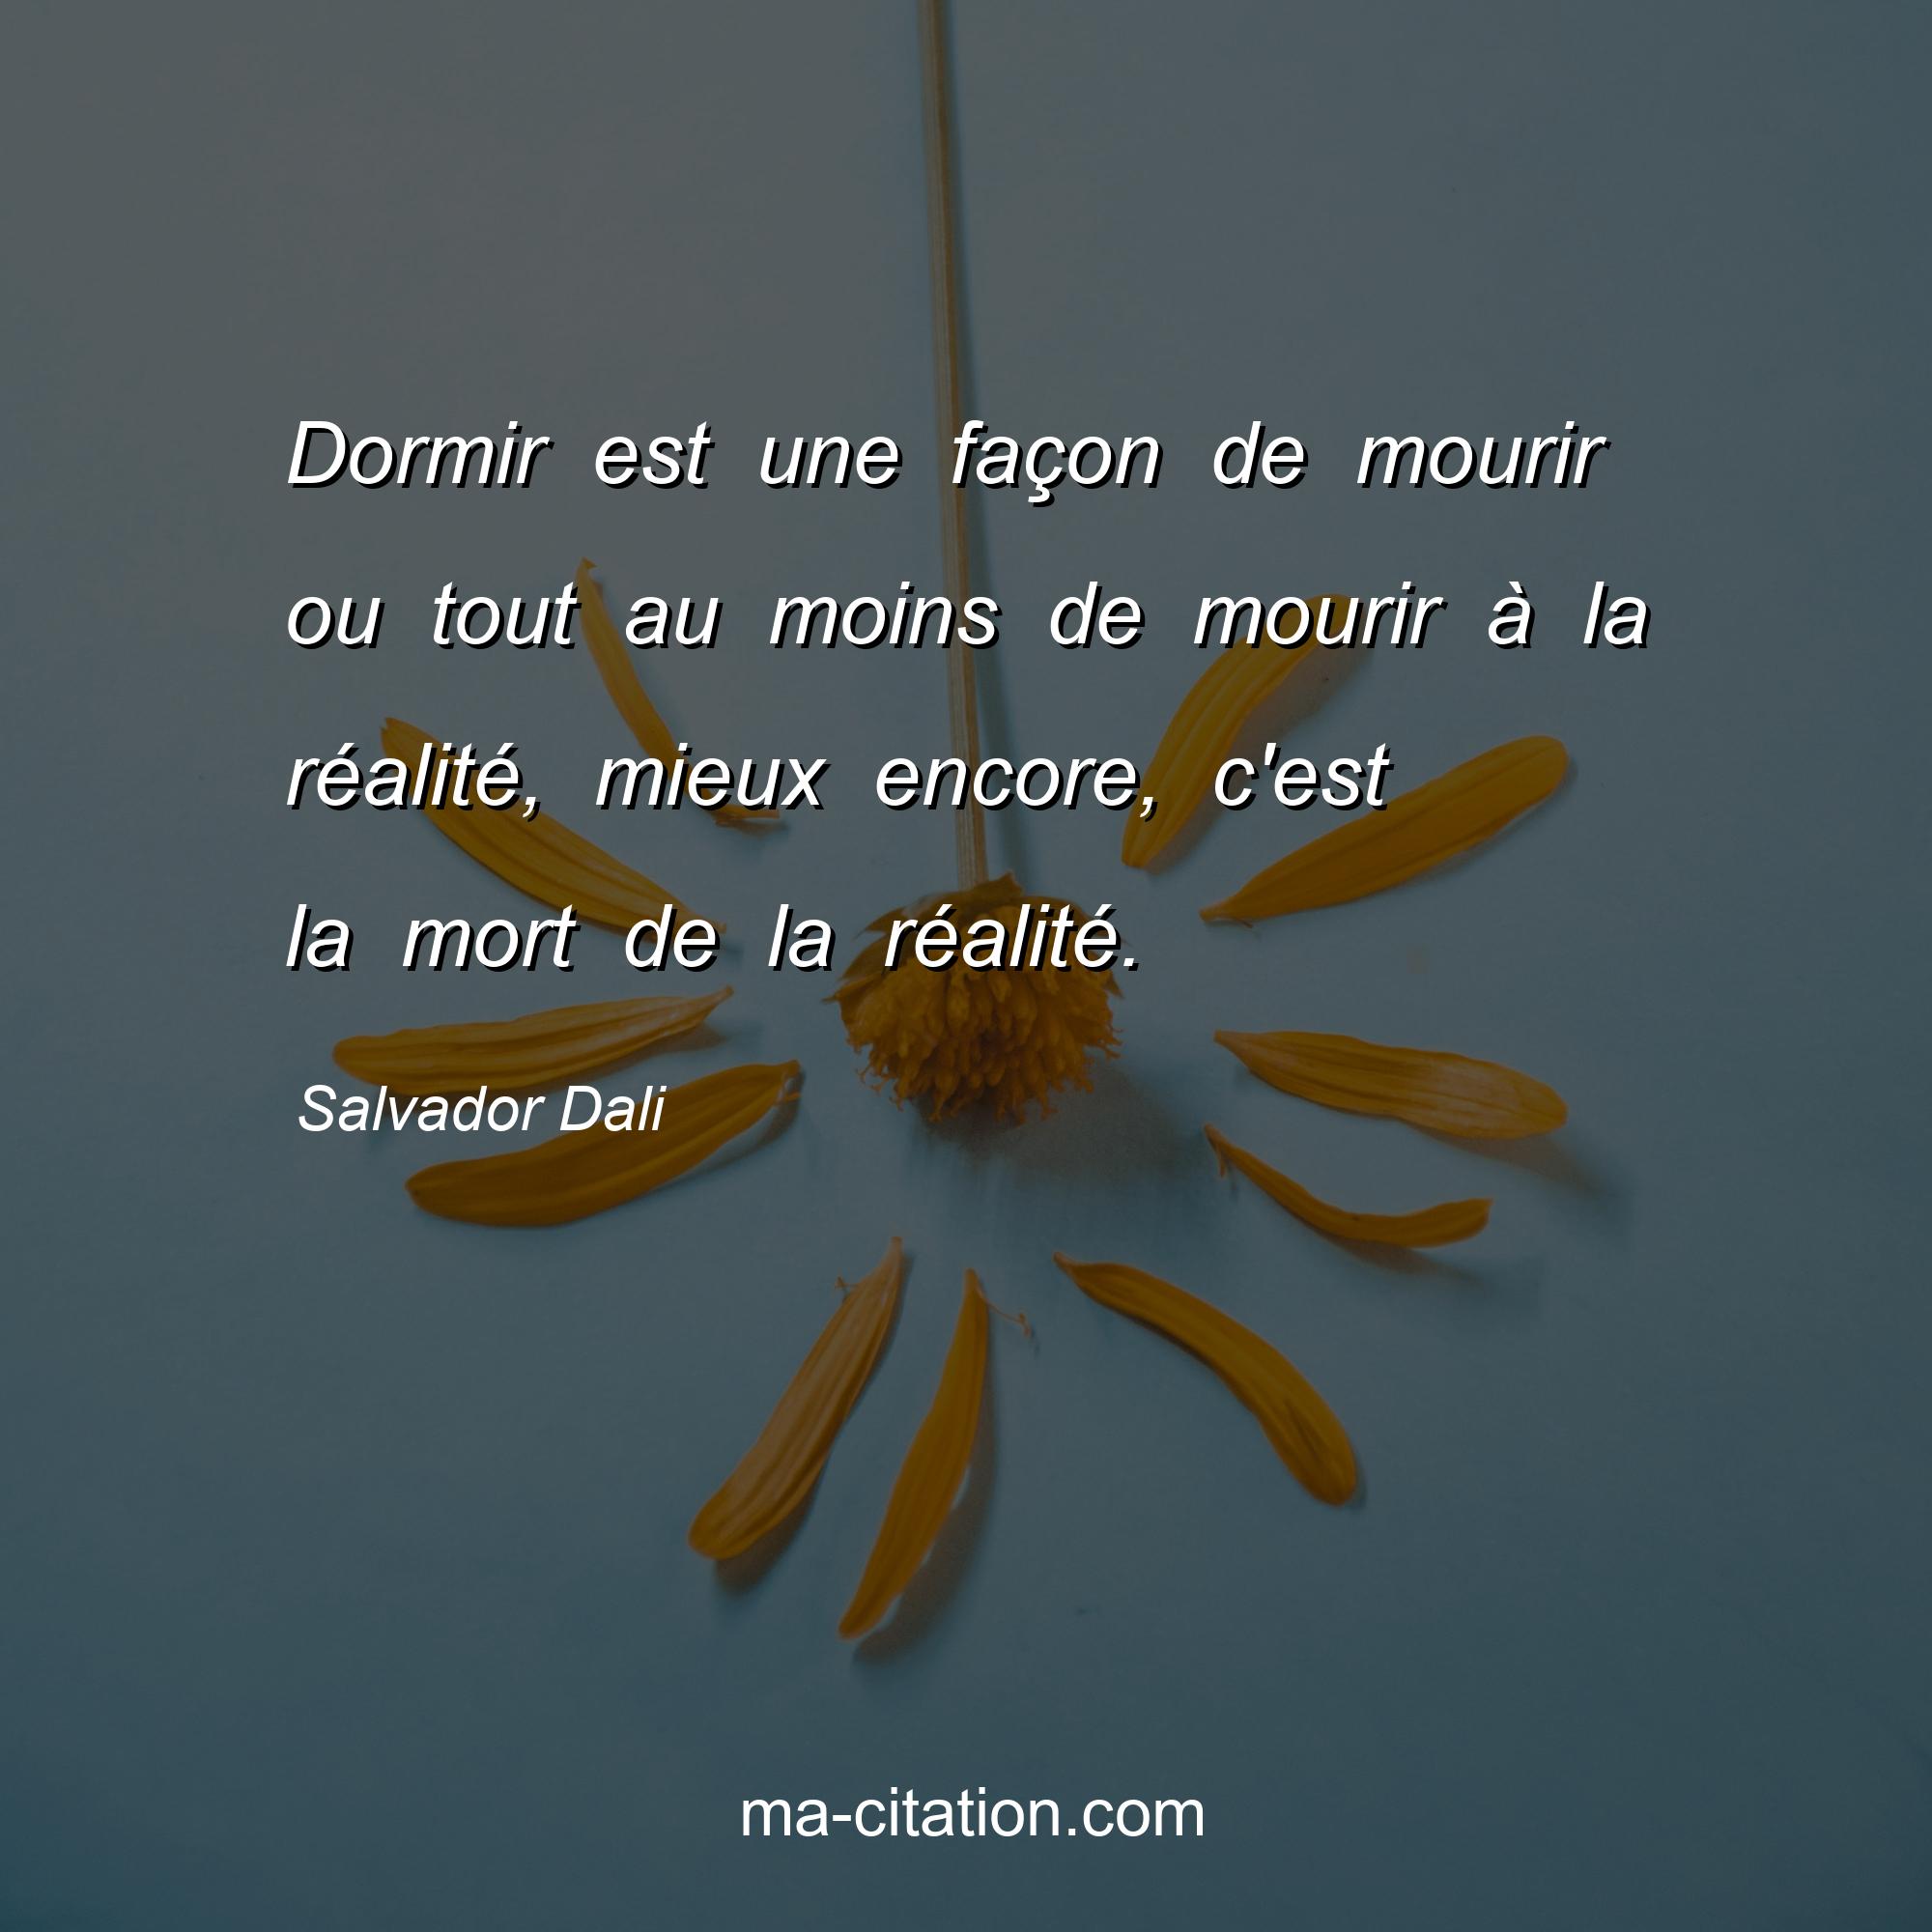 Salvador Dali : Dormir est une façon de mourir ou tout au moins de mourir à la réalité, mieux encore, c'est la mort de la réalité.